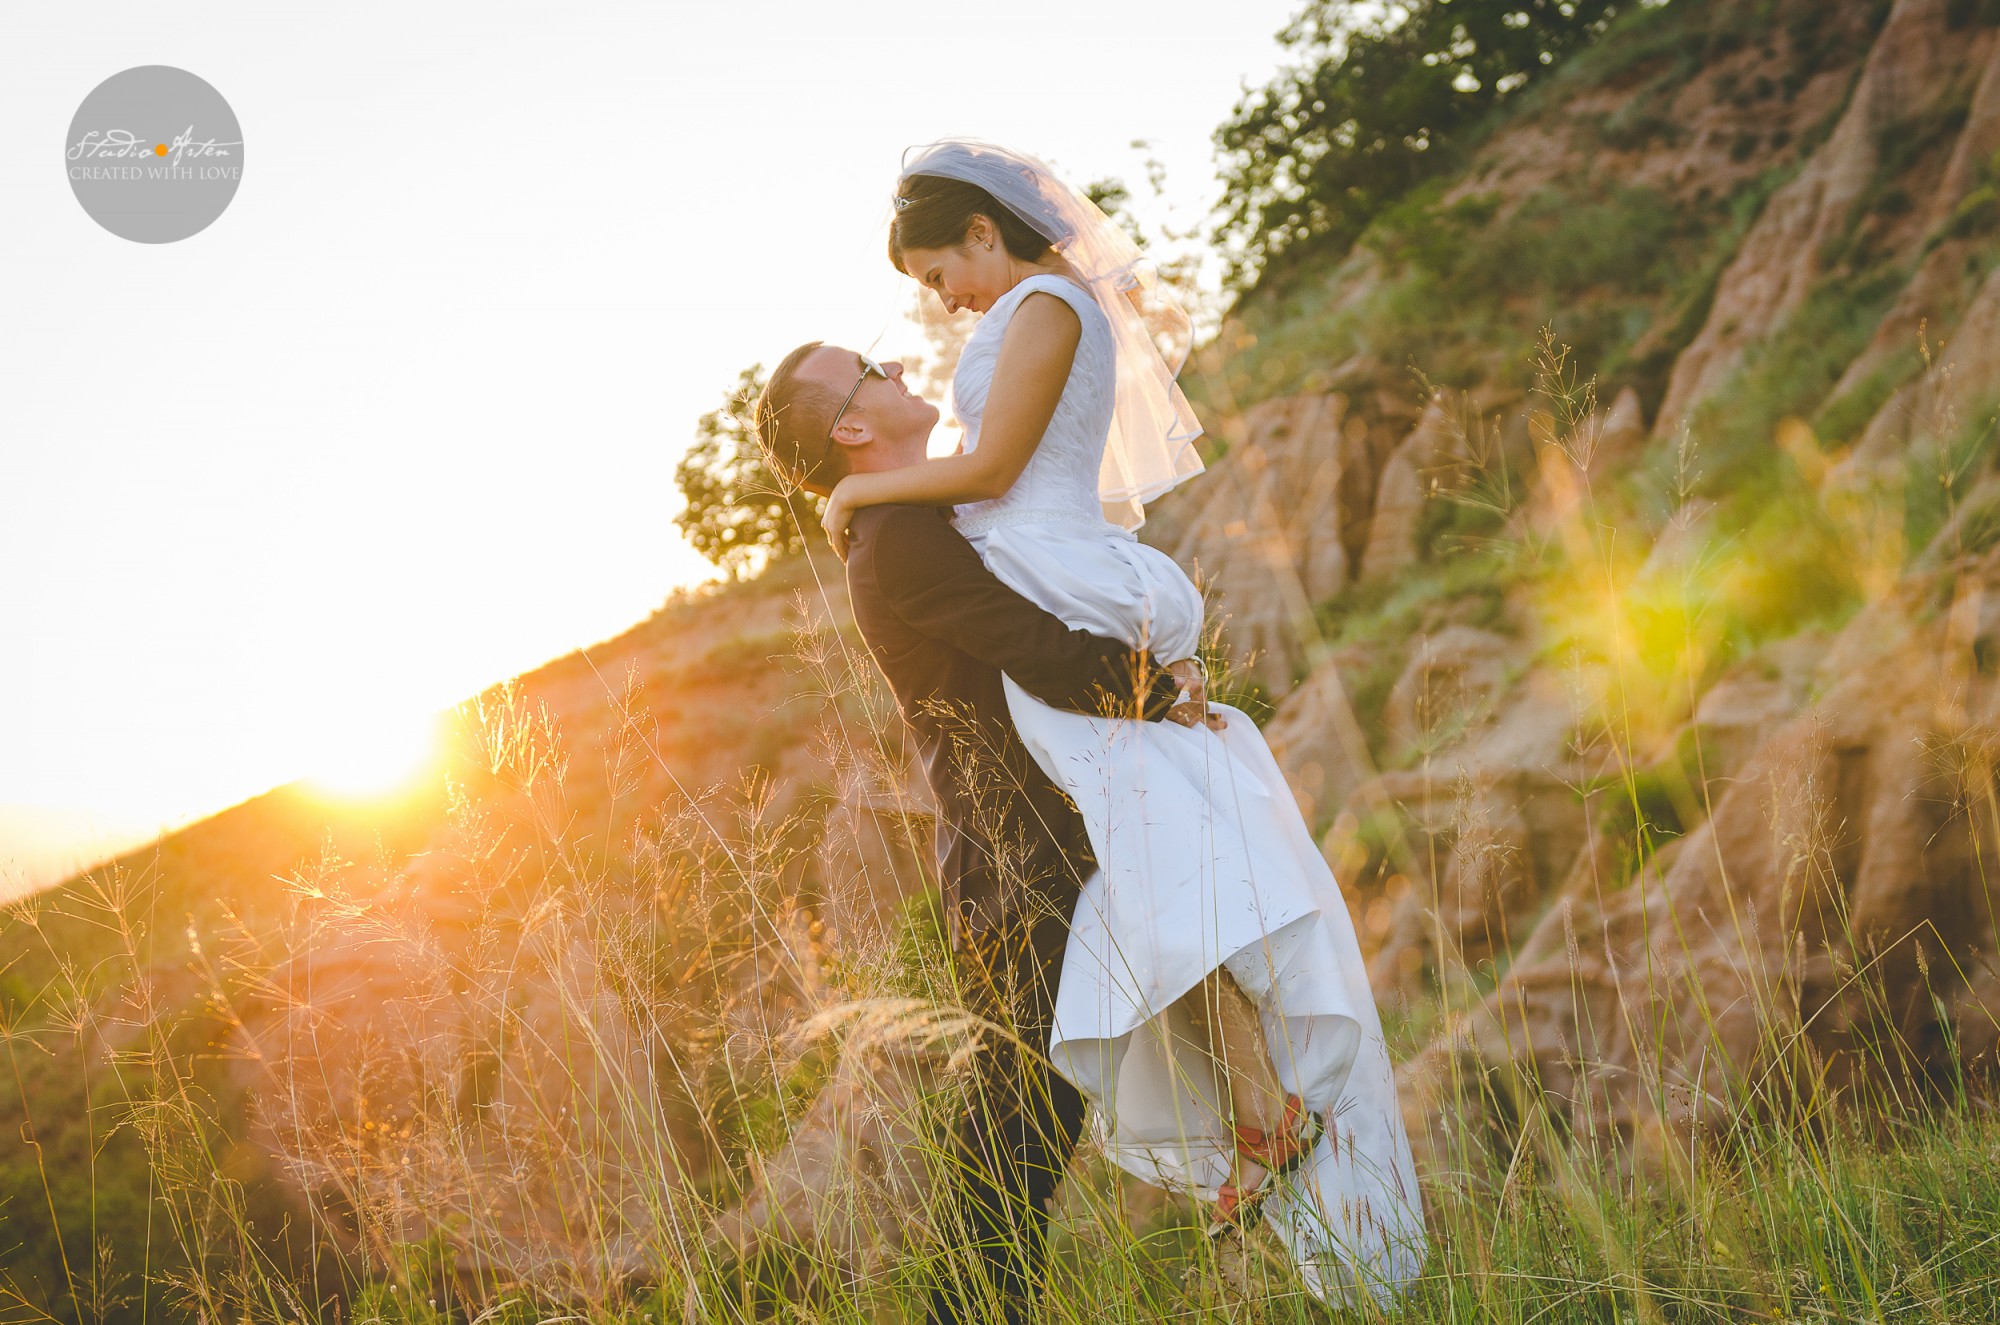 Apus de soare, fotosedinta dupa nunta, fotografie profesionala de nunta, fotograf profesionist